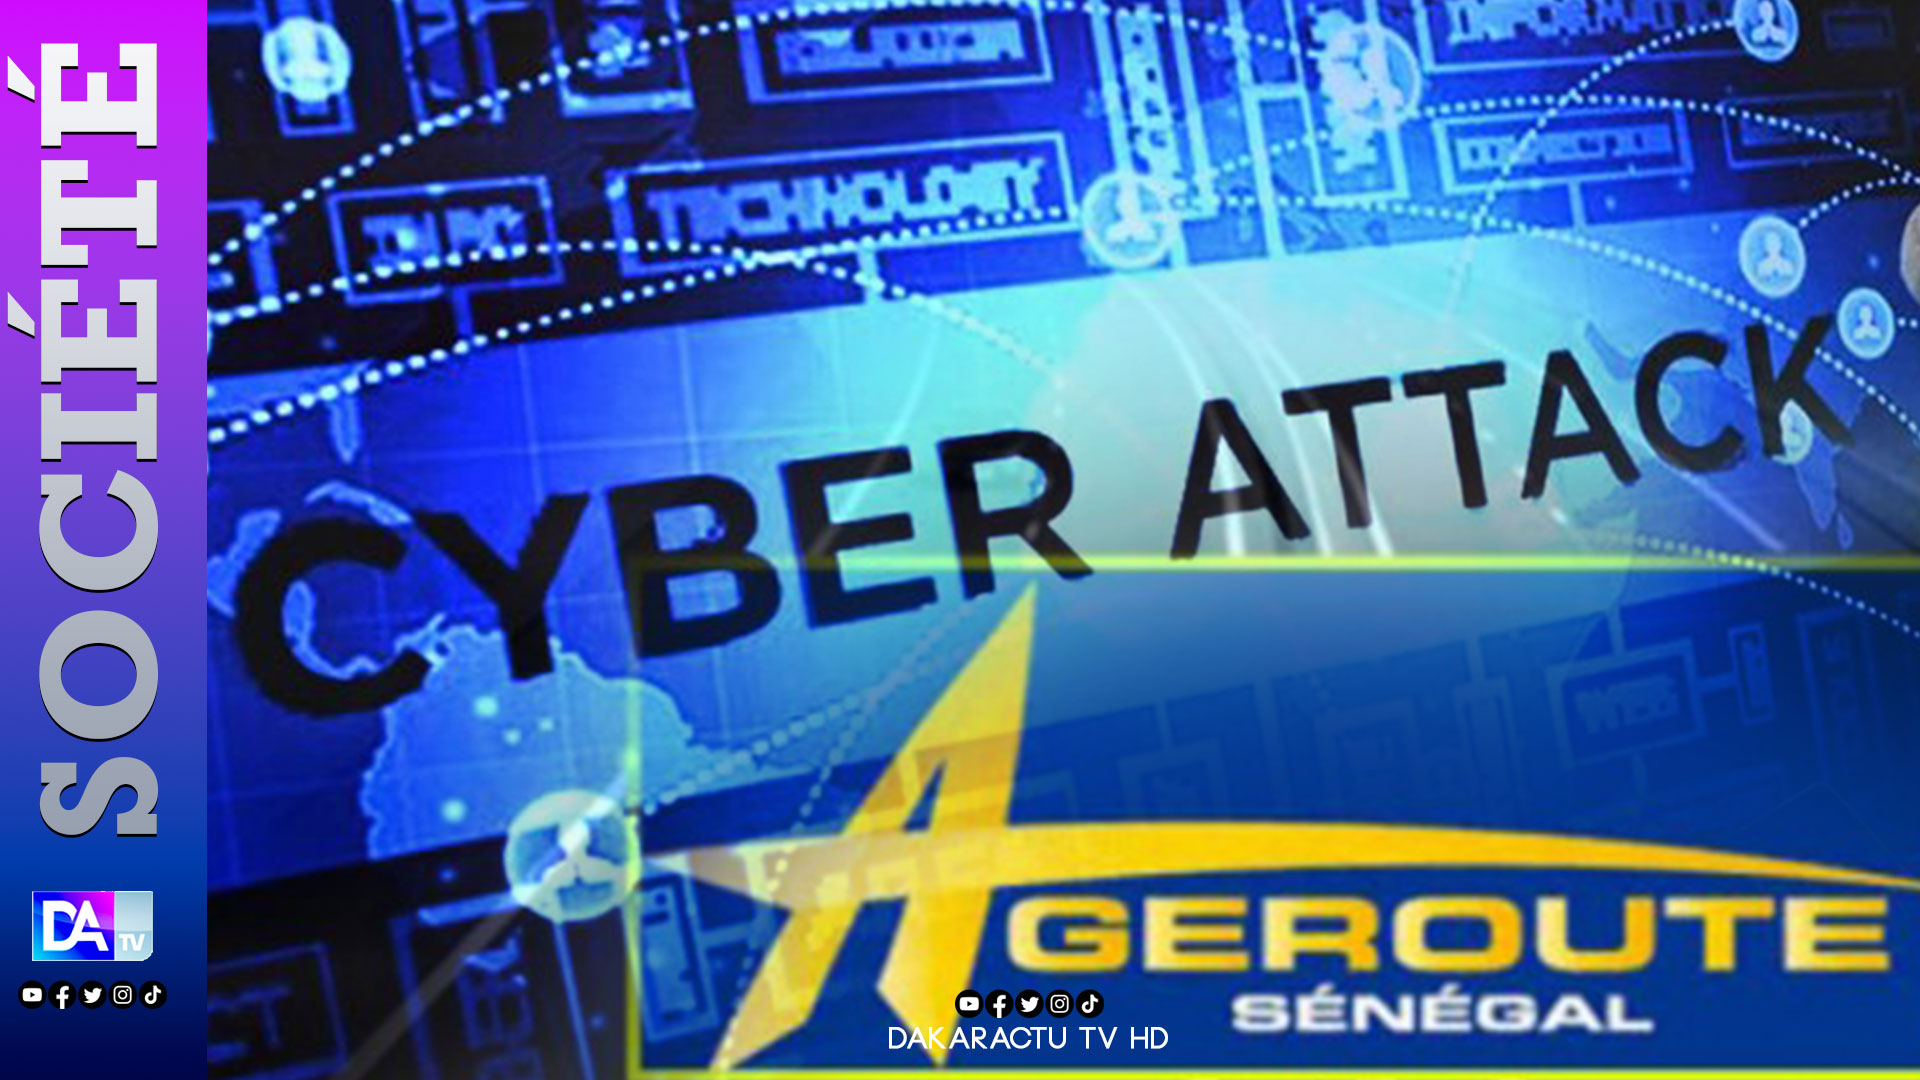  Cyberattaque : les données de l’Ageroute publiées par le groupe cybercriminel lockbit 